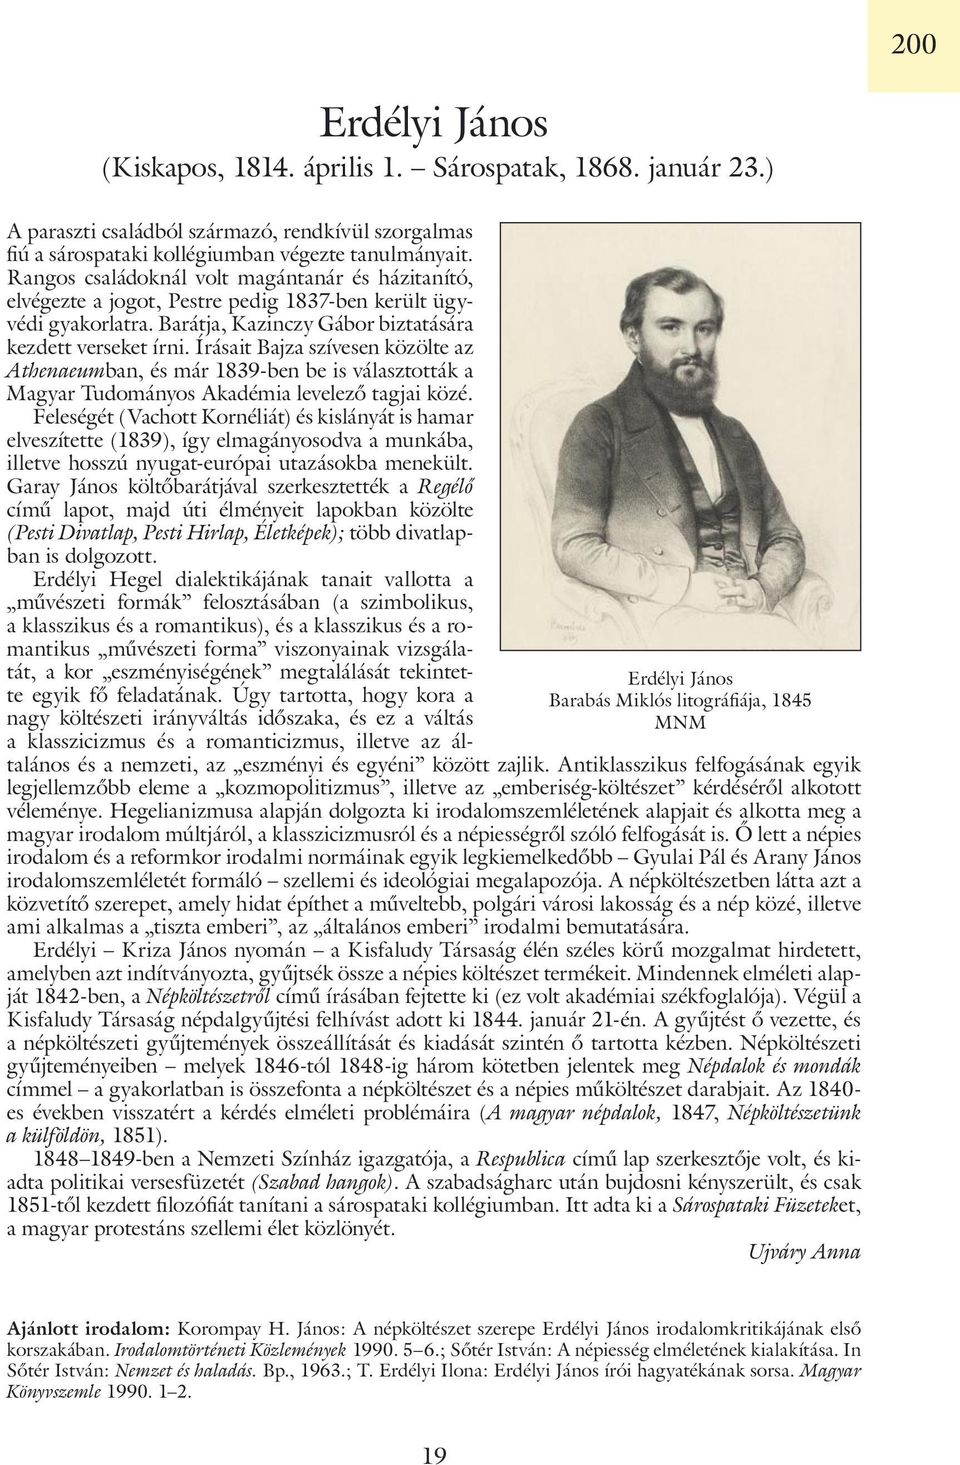 Rangos családoknál volt magántanár és házitanító, elvégezte a jogot, Pestre pedig 1837-ben került ügyvédi gyakorlatra. Barátja, Kazinczy Gábor biztatására kezdett verseket írni.